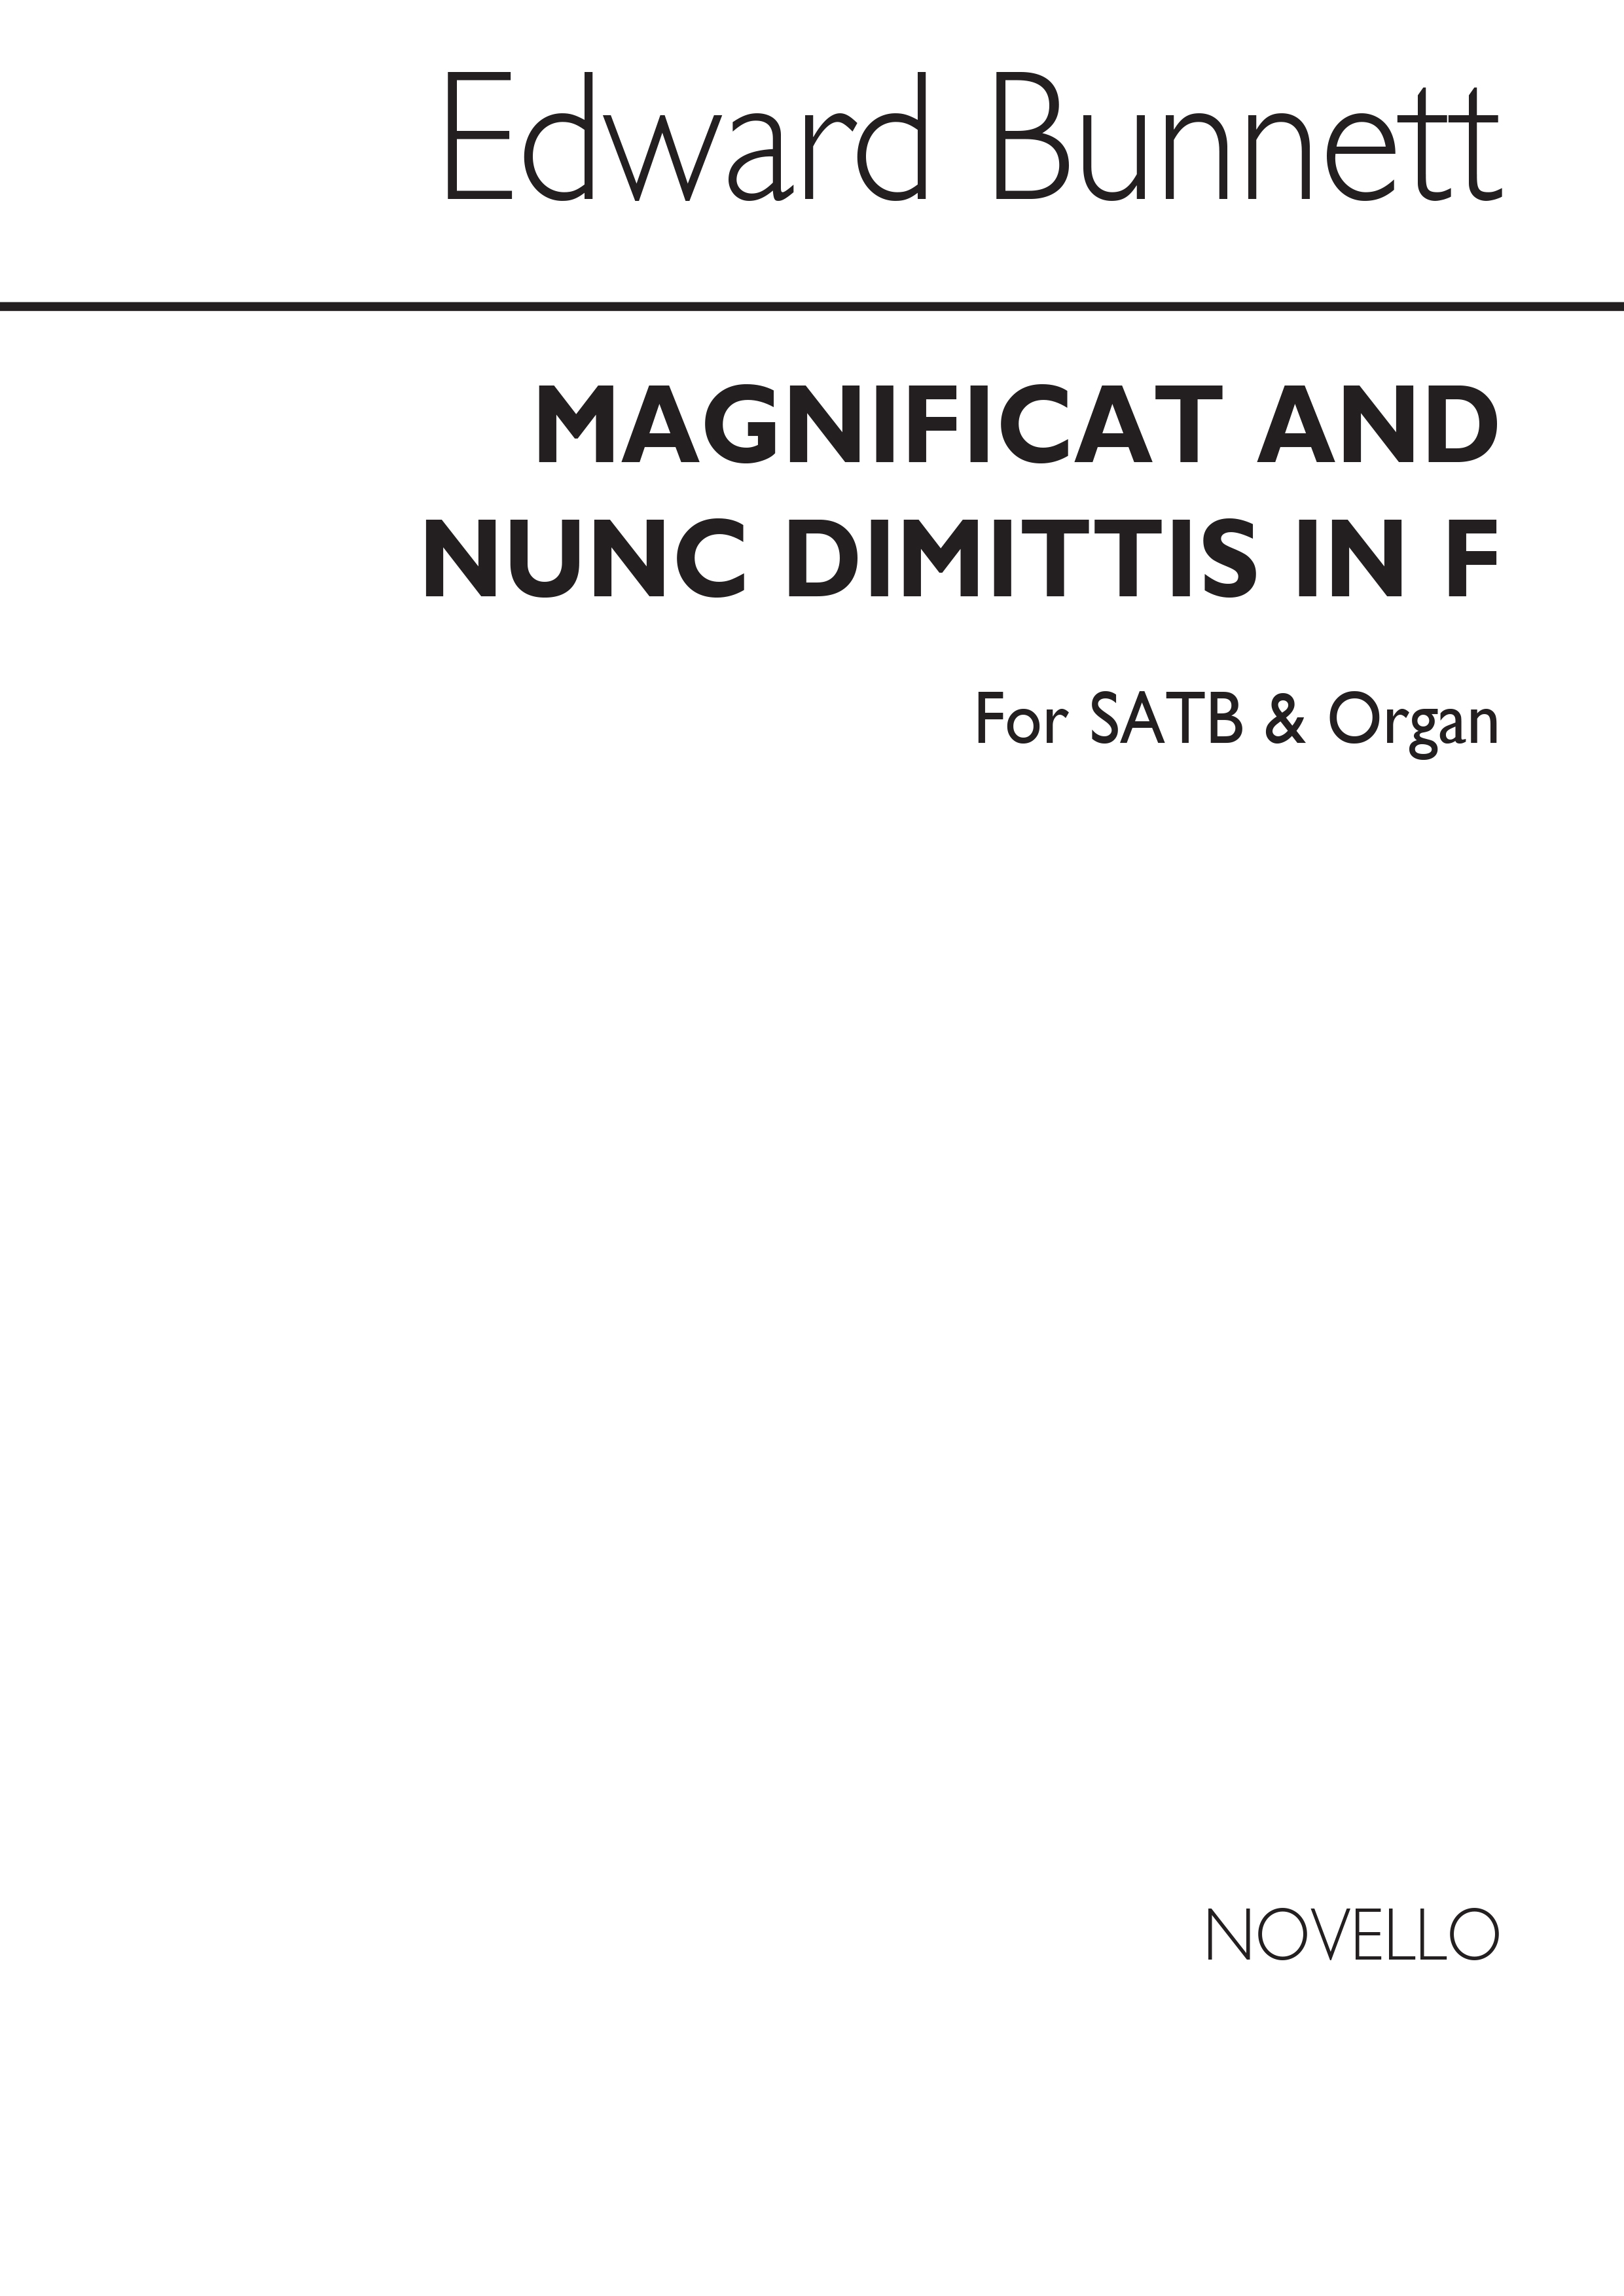 E. Bunnett: Mag & Nunc In F